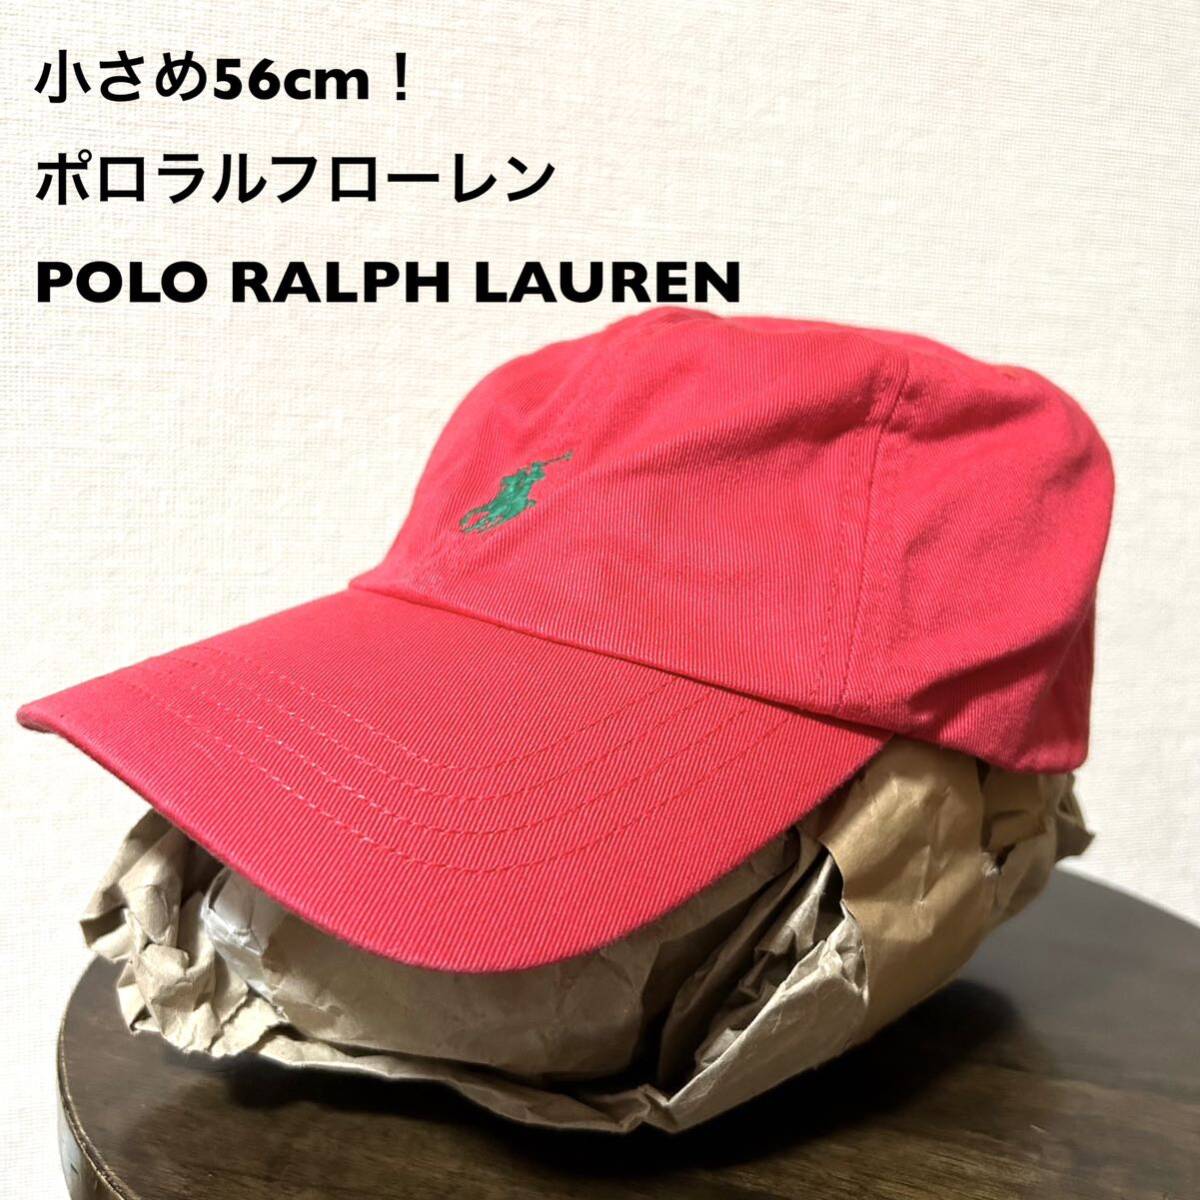 小さめ56cm！ポロラルフローレン 古着キャップ 赤×緑ポニー刺繍 中国製 POLO RALPH LAUREN 帽子 